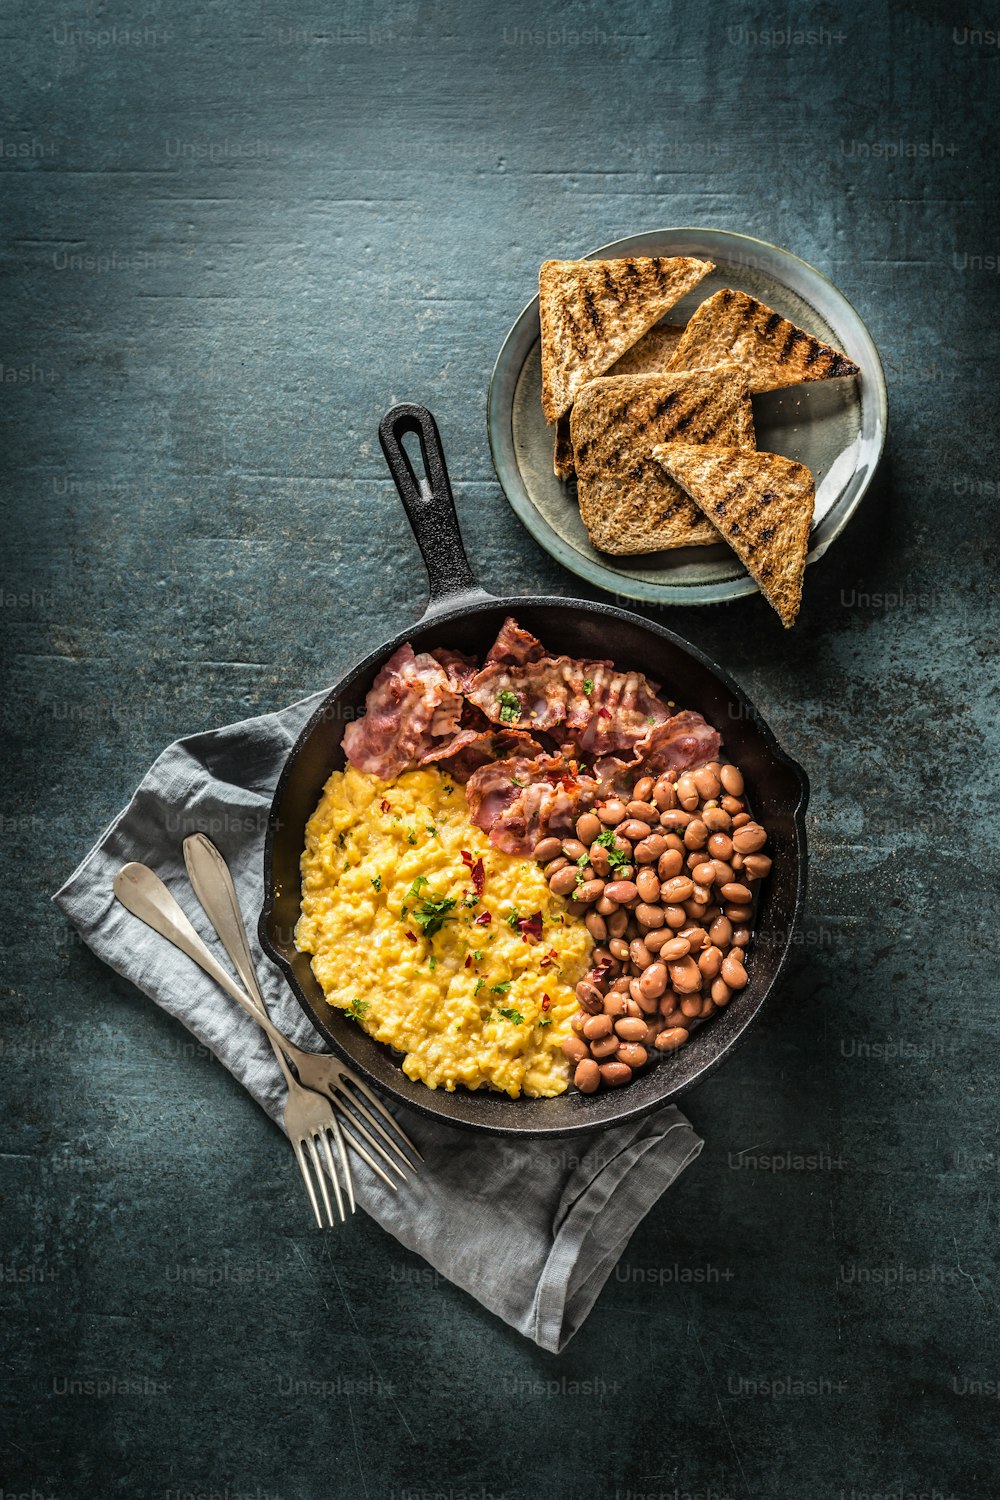 Desayuno inglés: huevos revueltos, tocino a la parrilla, frijoles y pan tostado - Vista superior.